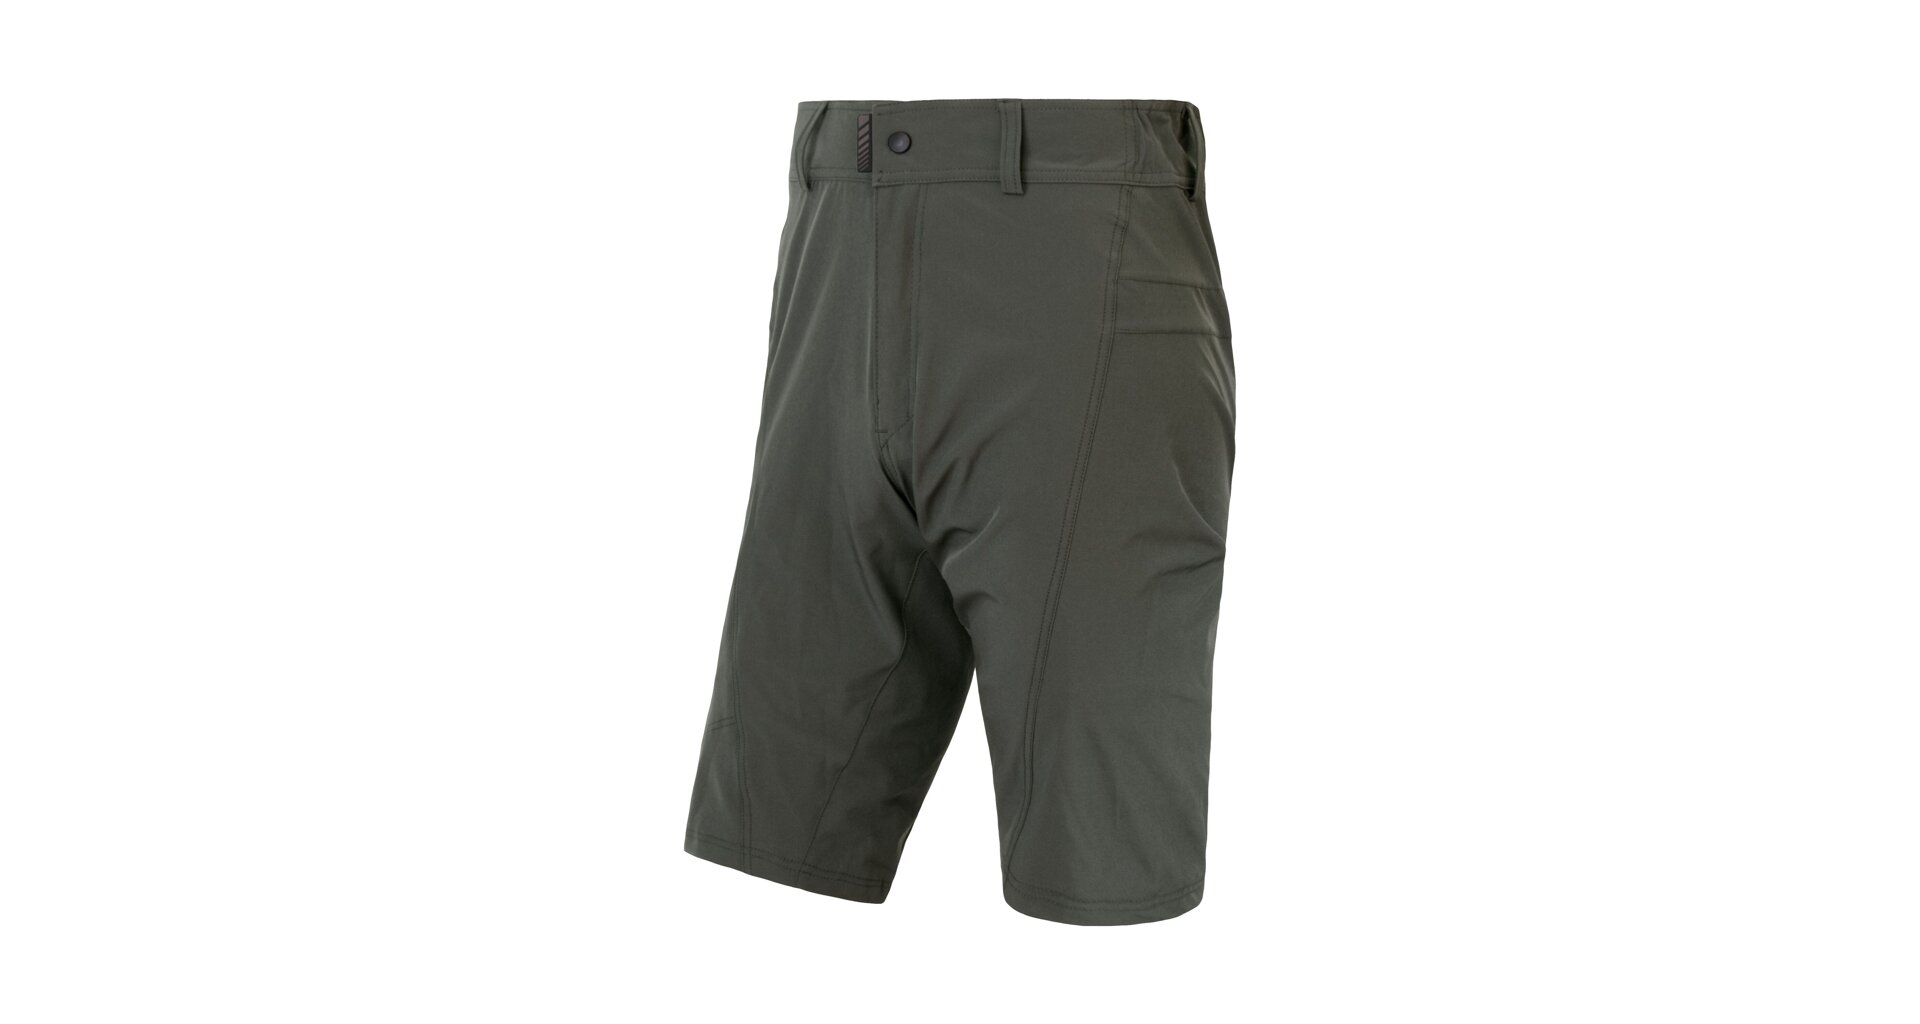 SENSOR HELIUM pánské kalhoty s cyklovložkou krátké volné olive green Velikost: L